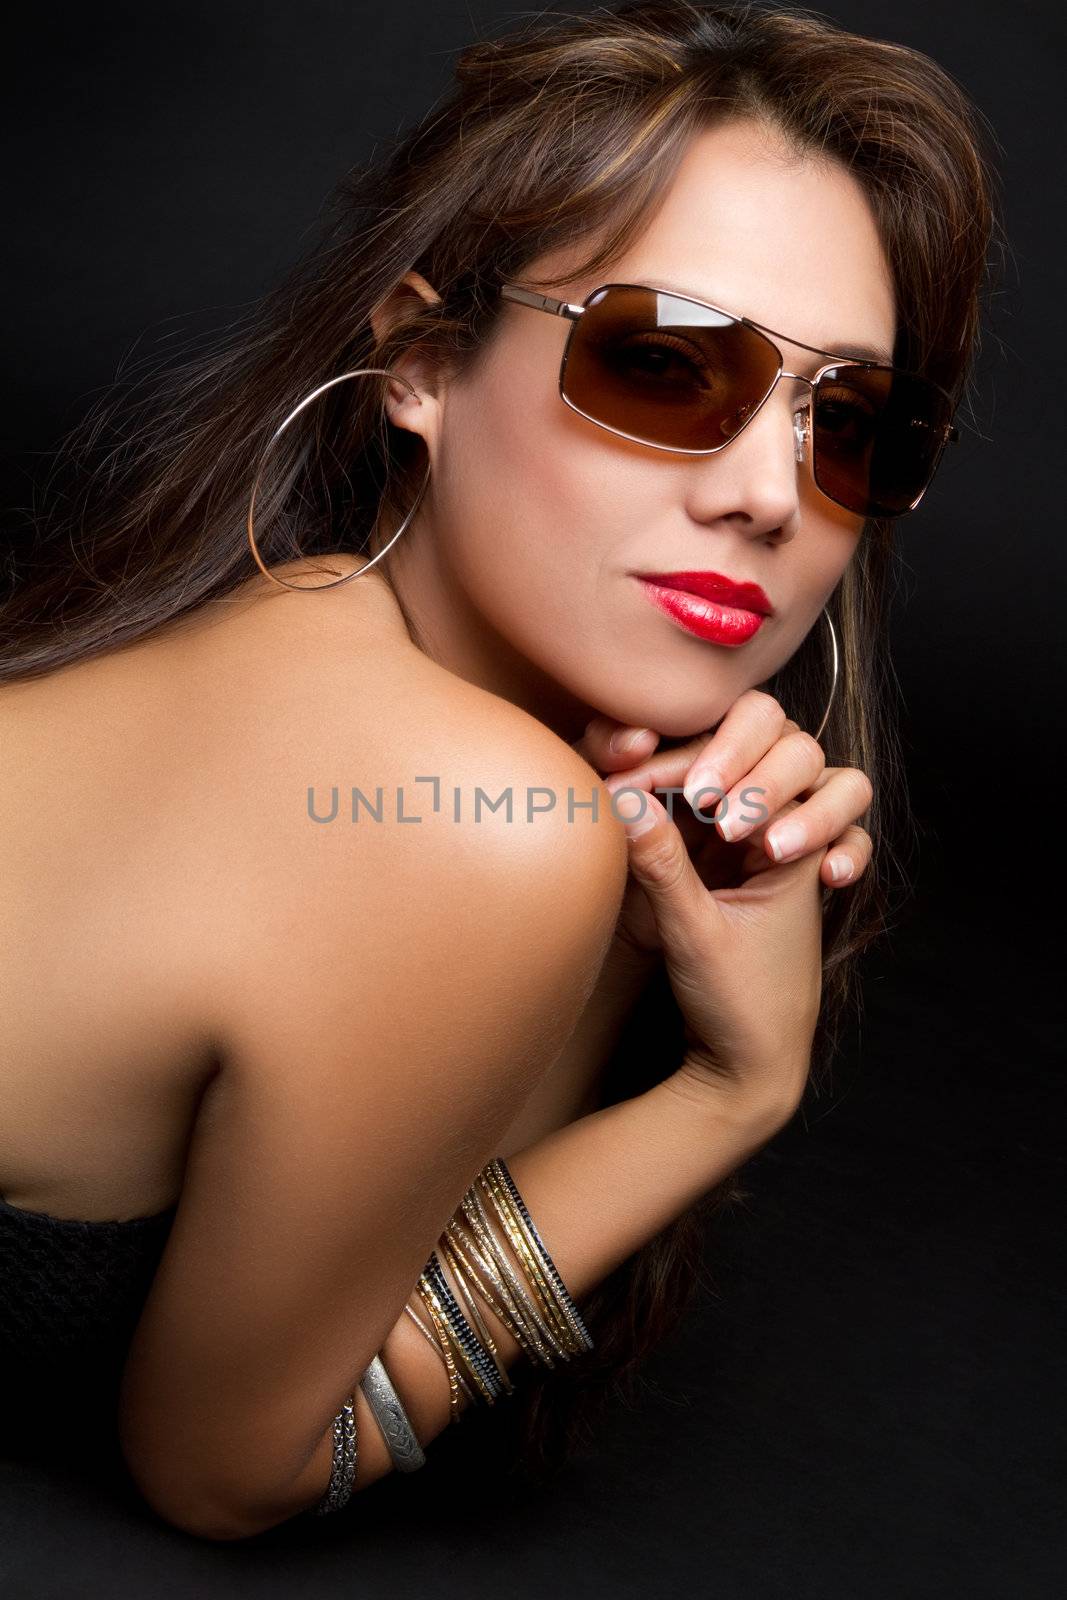 Beautiful latina woman wearing sunglasses